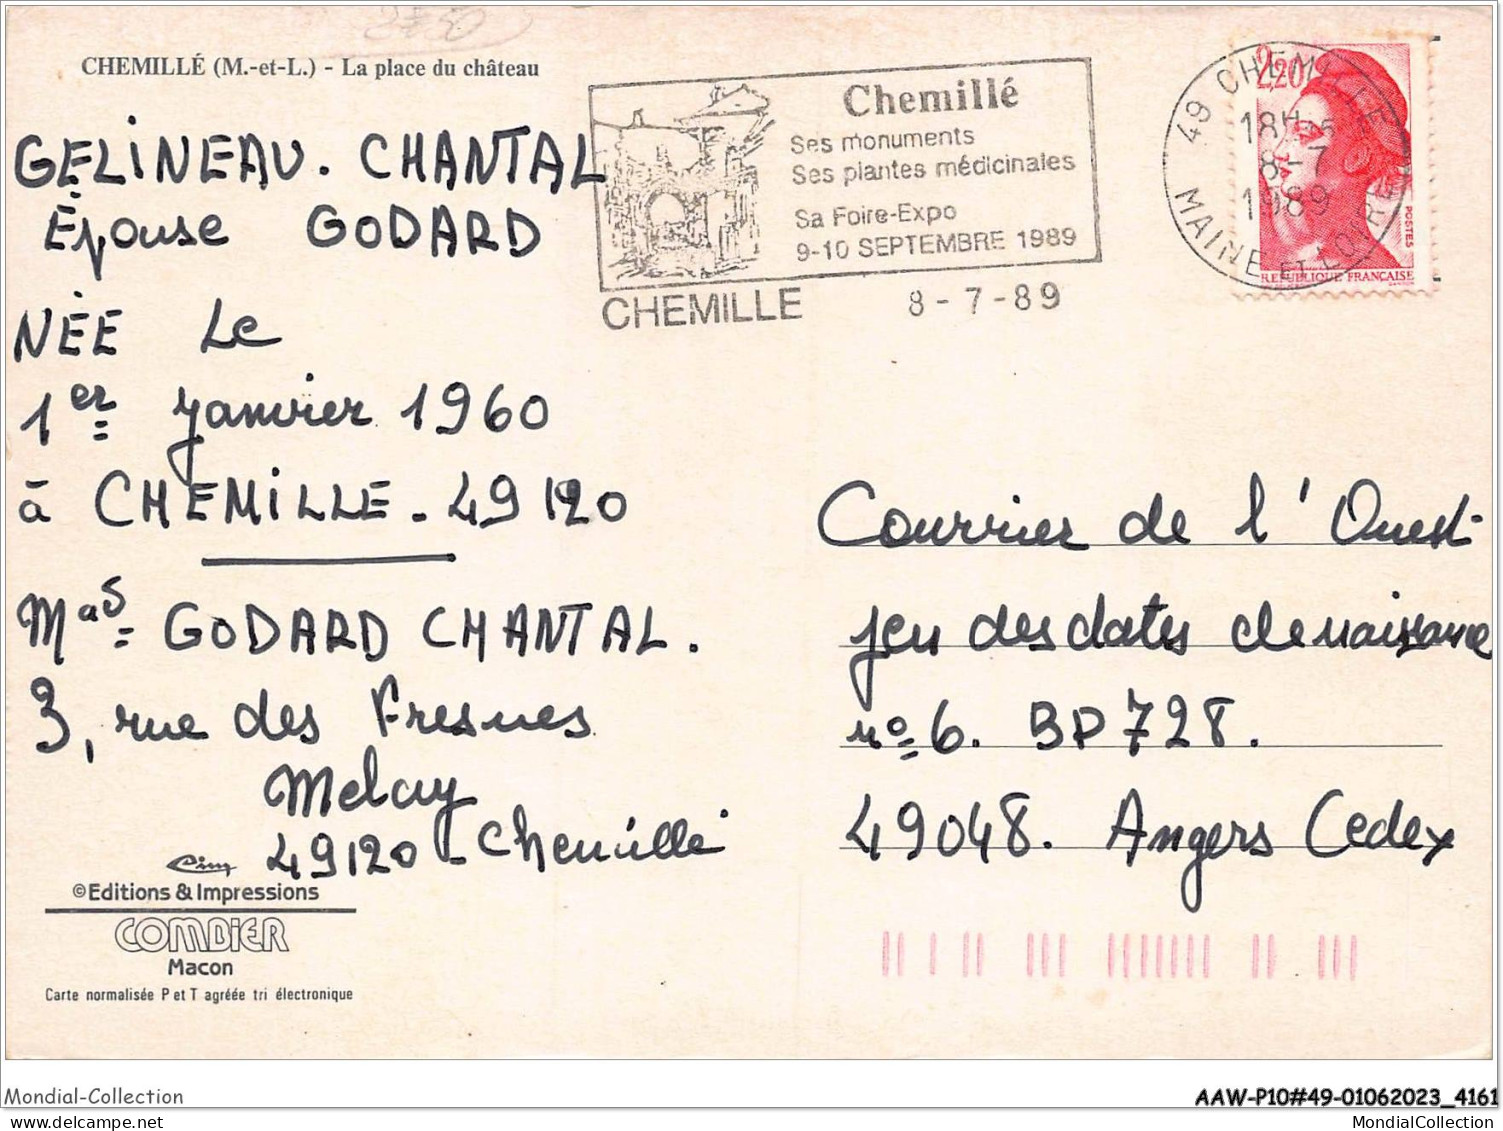 AAWP10-49-0867 - CHEMILLE - La Place Du Château - Chemille